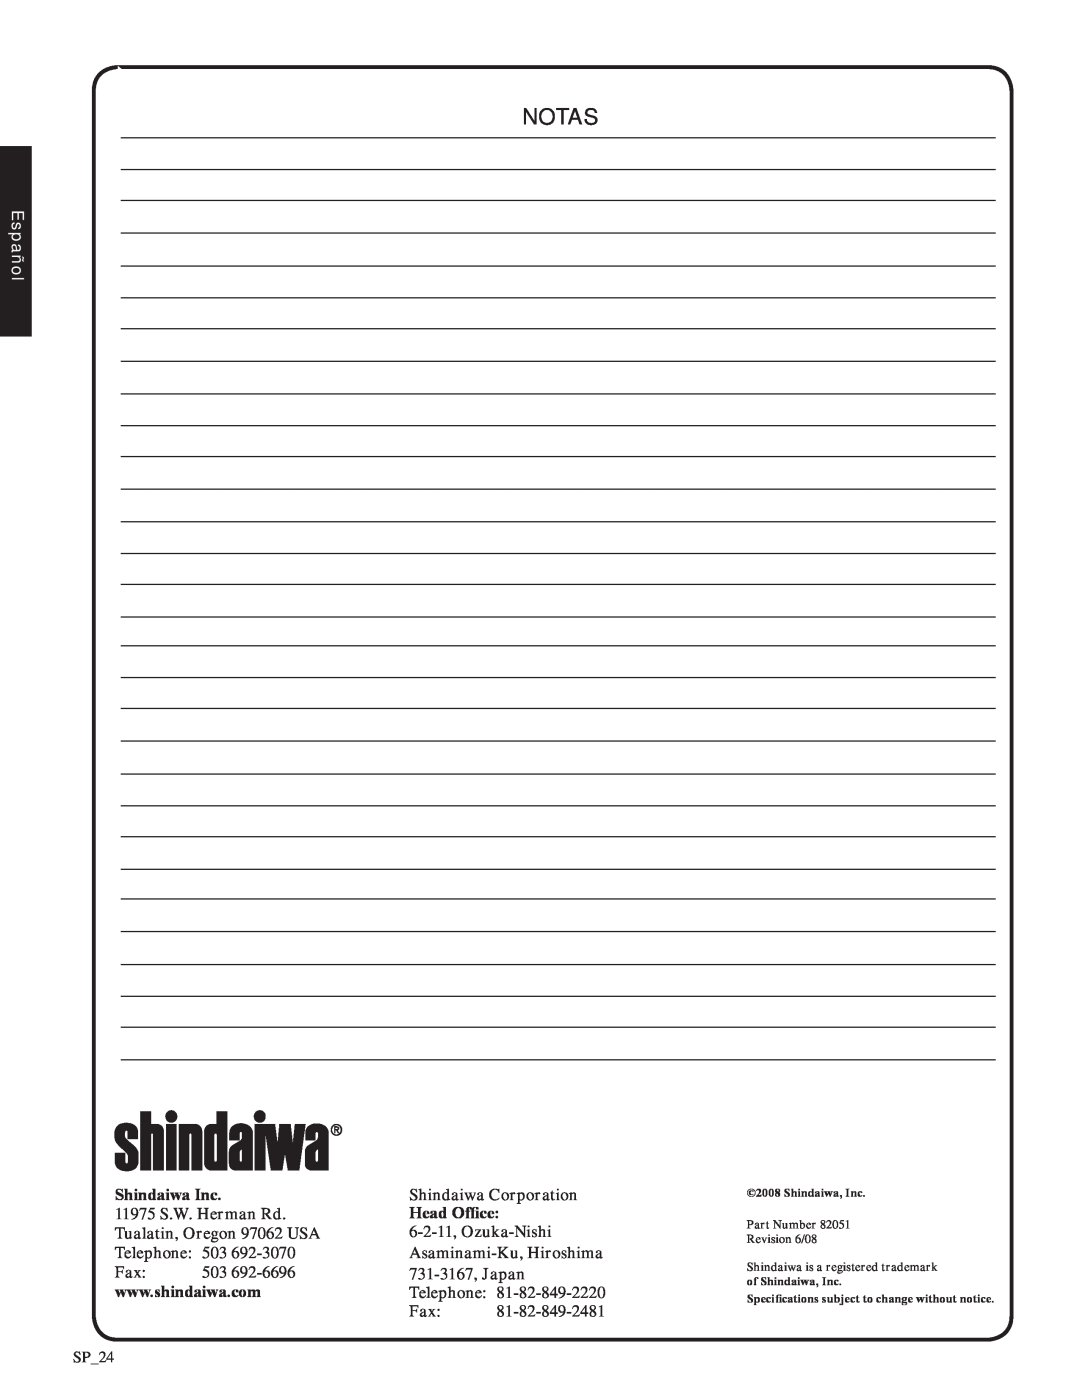 Shindaiwa EB212, 82051 manual notas, Español, Shindaiwa Inc 